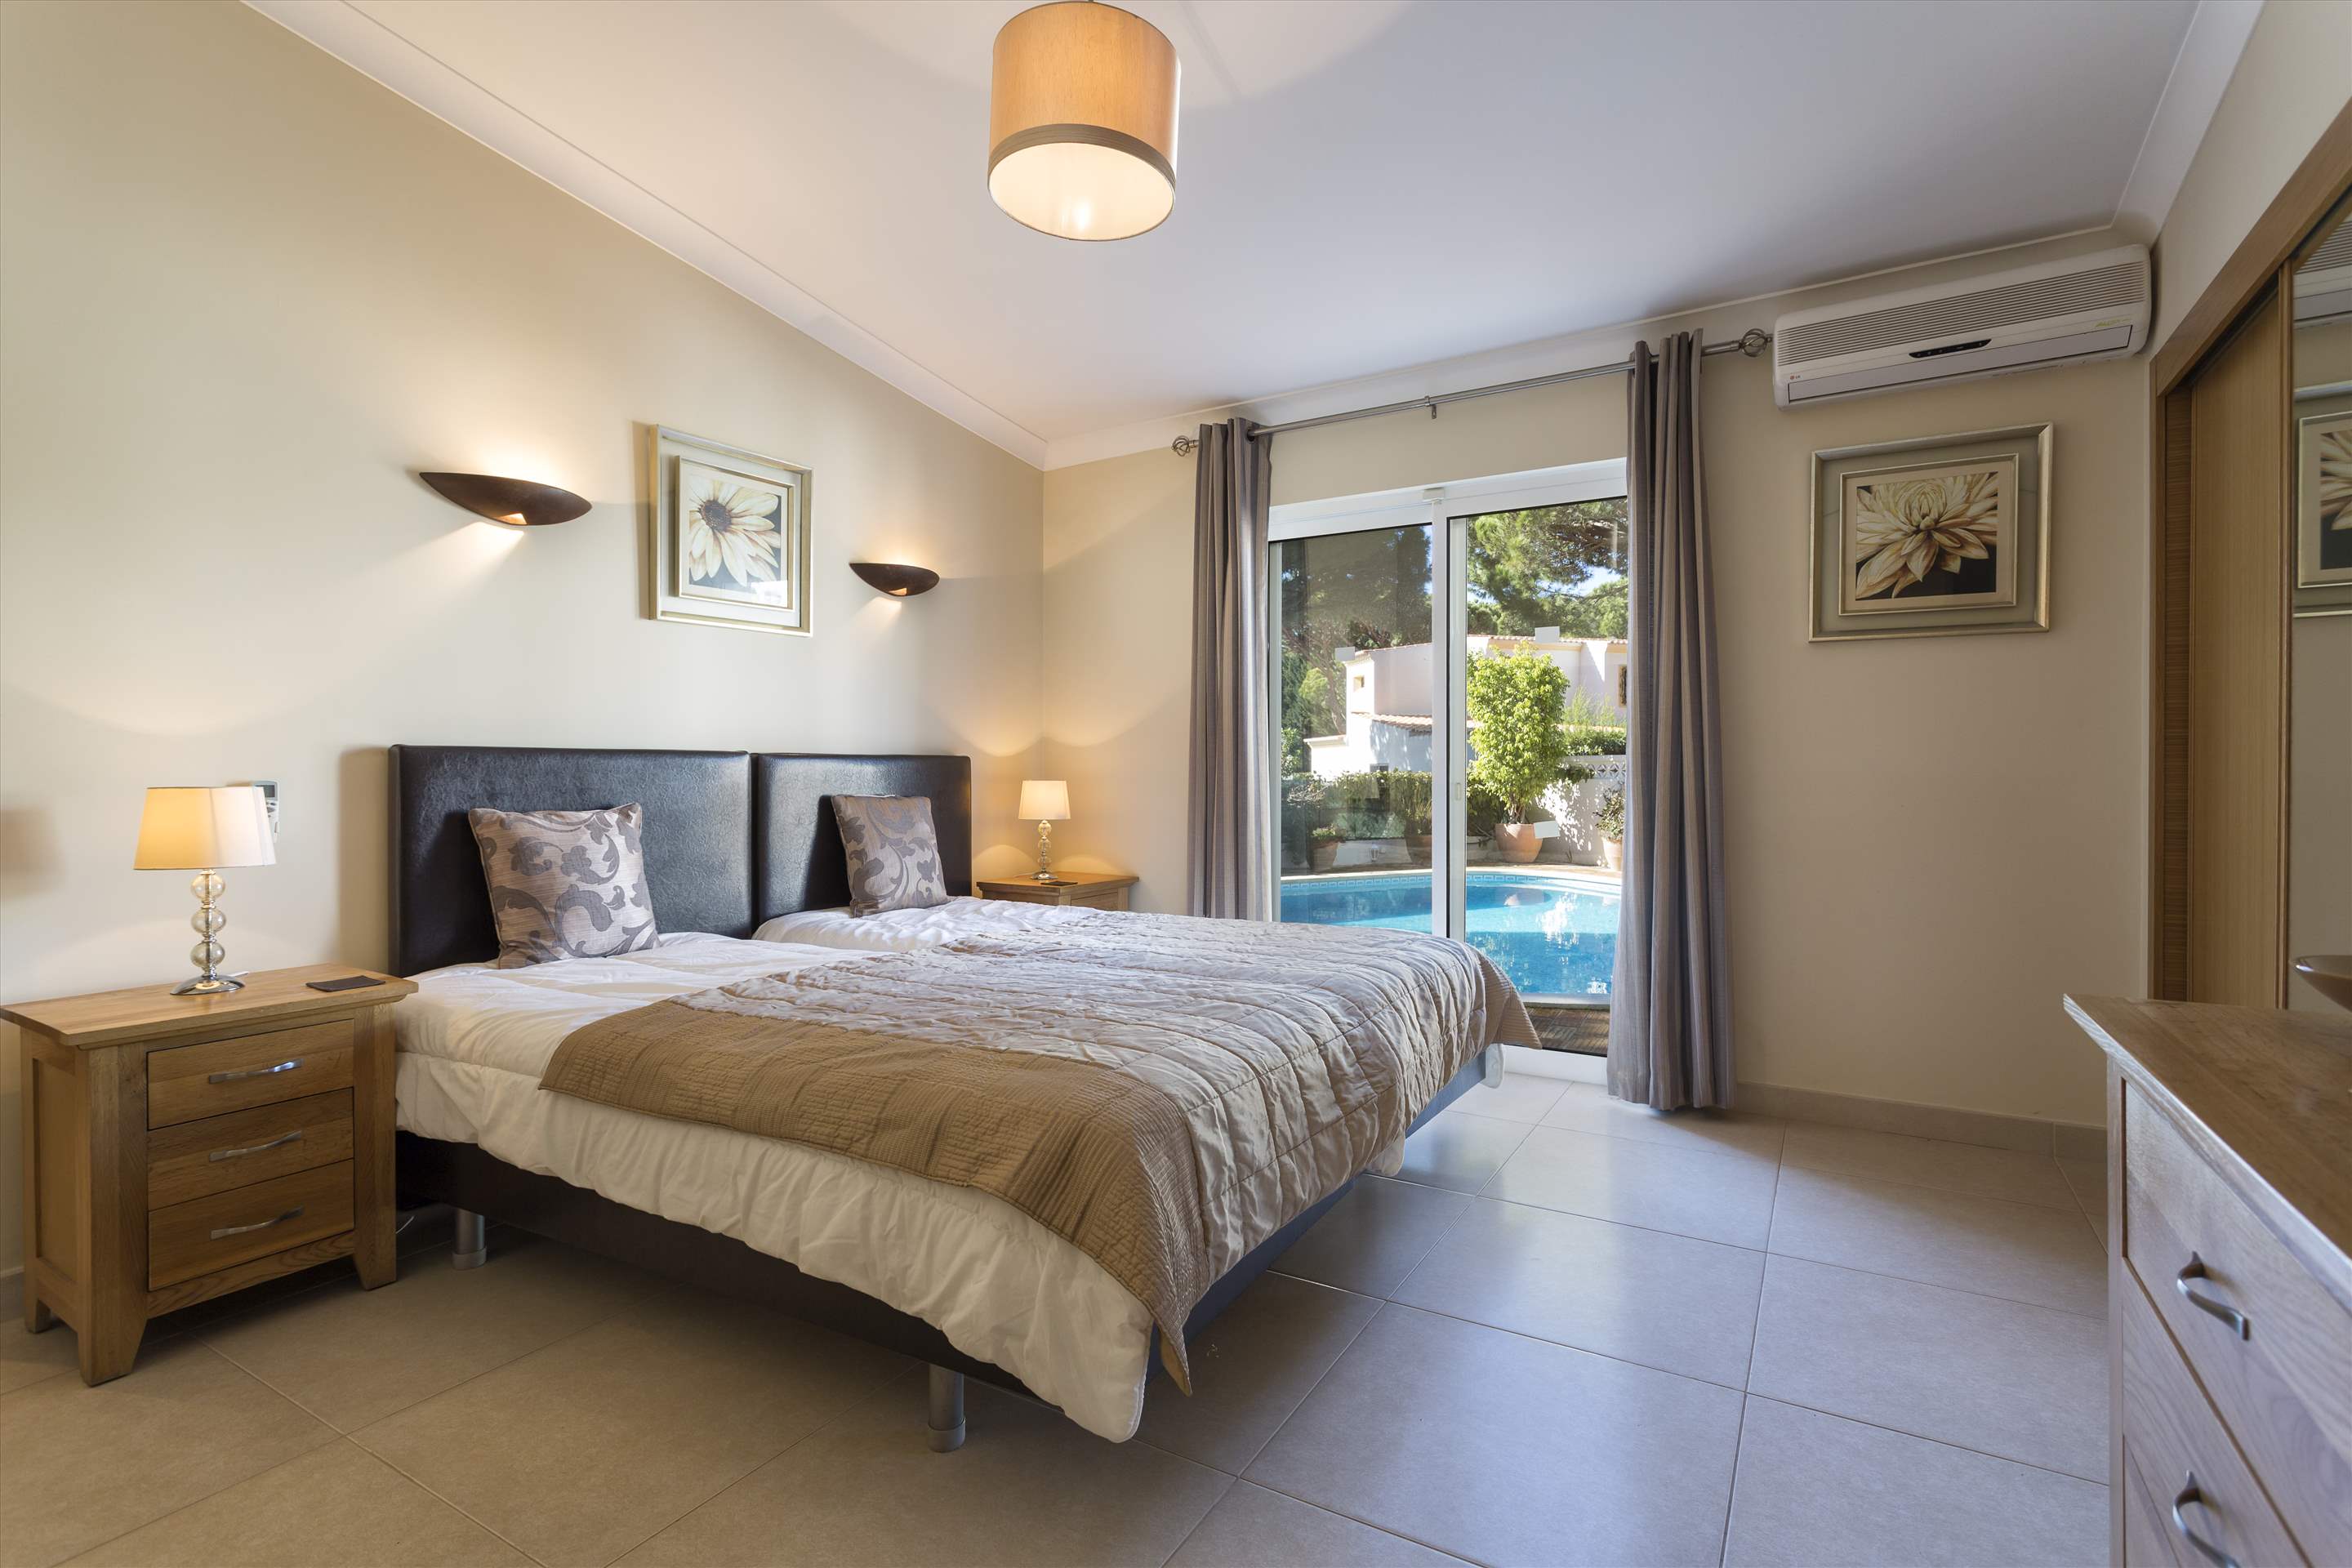 Casa Blanca, 4 Bed Rental, 4 bedroom villa in Vale do Lobo, Algarve Photo #11